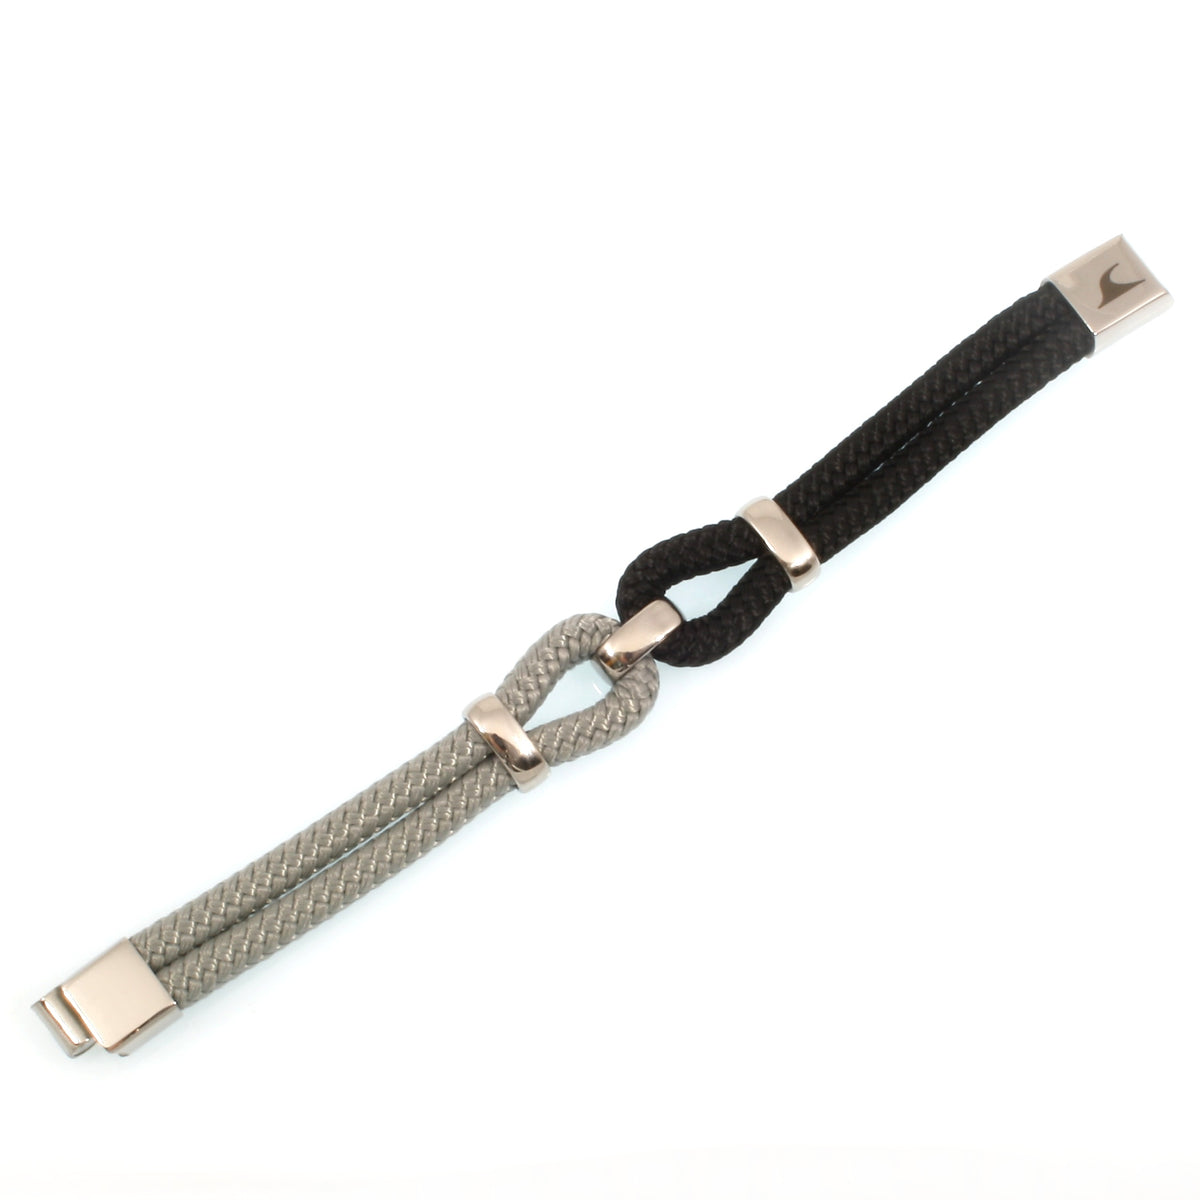 Damen-Segeltau-armband-roma-schwarz-grau-geflochten-Edelstahlverschluss-detail-wavepirate-shop-st